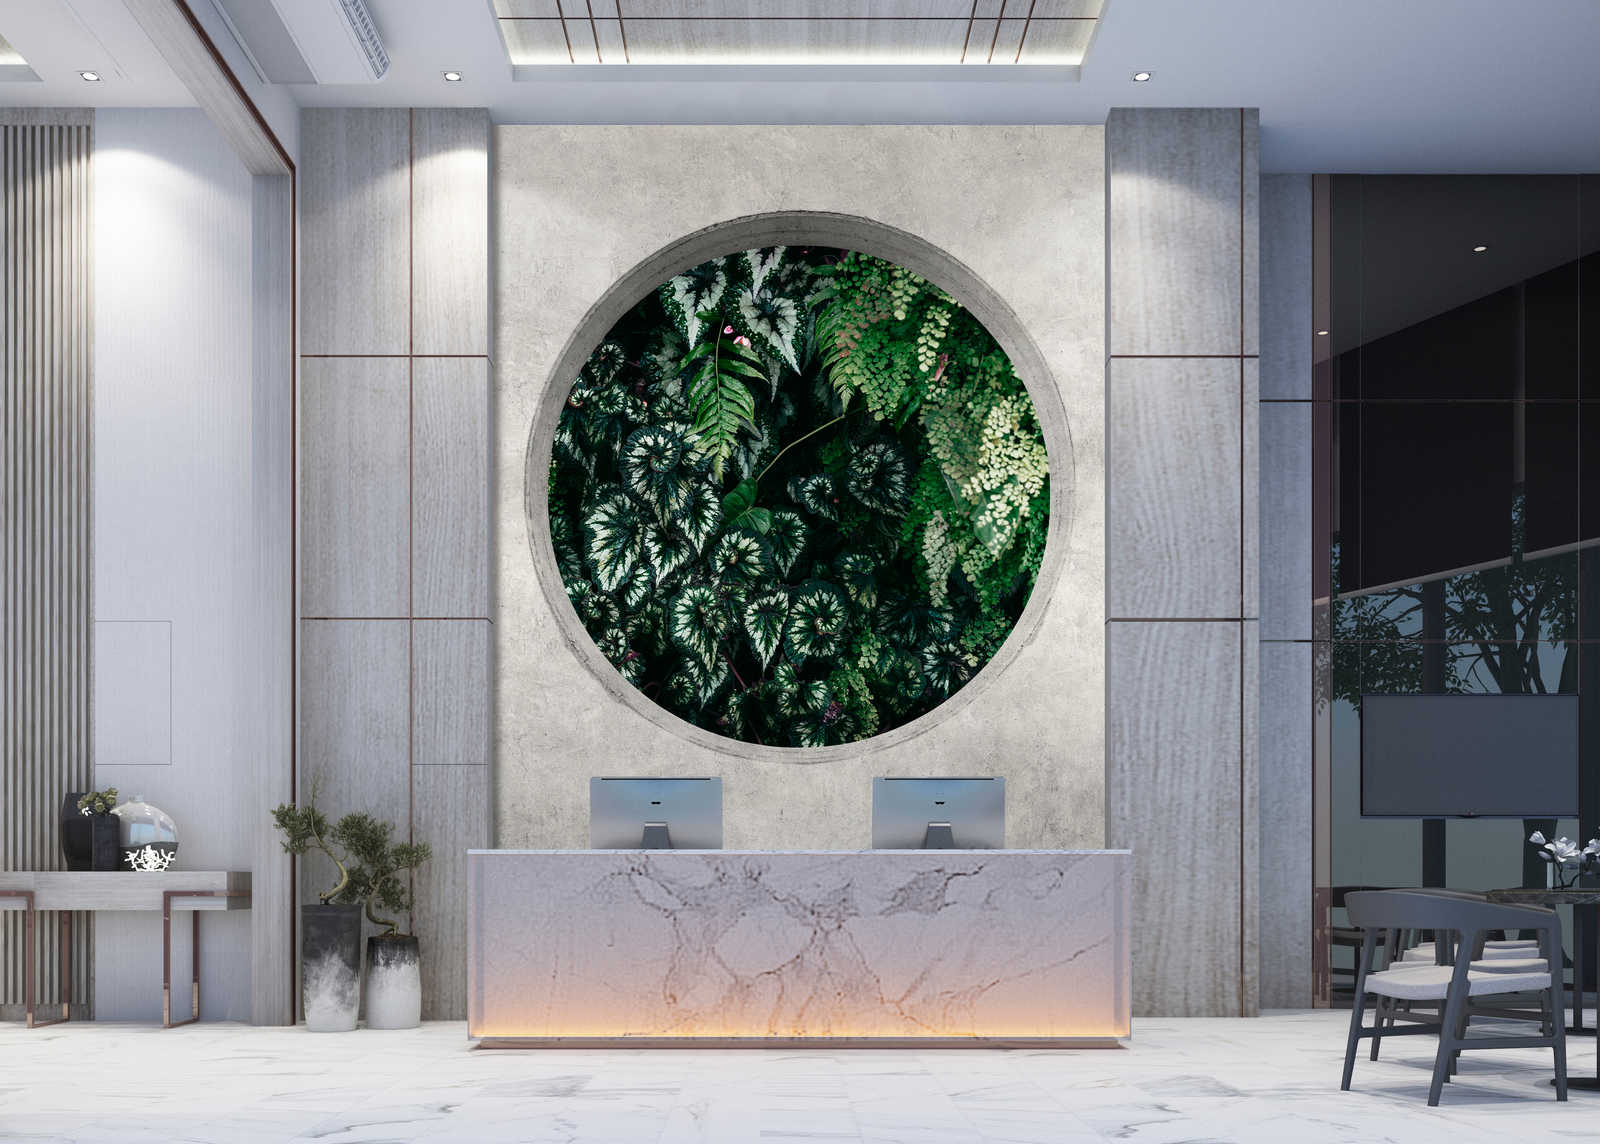             Deep Green 1 - Muurschildering raam rond met jungle planten
        